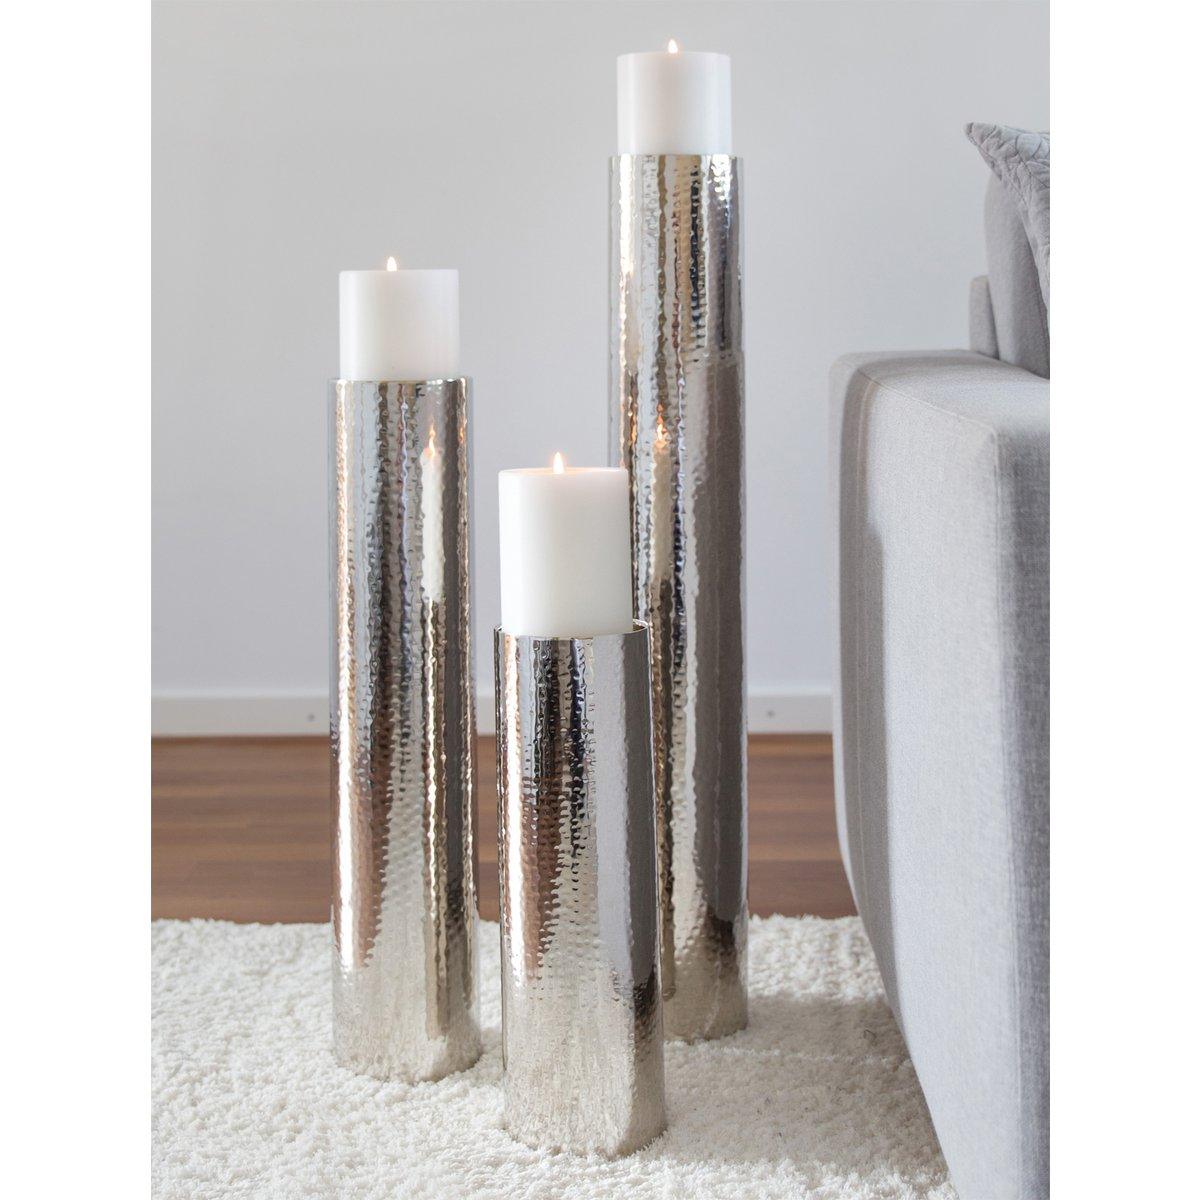 EDZARD Kerzenständer Boston für Kerze Durchmesser 10 cm, gehämmert, Edelstahl glänzend vernickelt, H 40 cm - HomeDesign Knaus